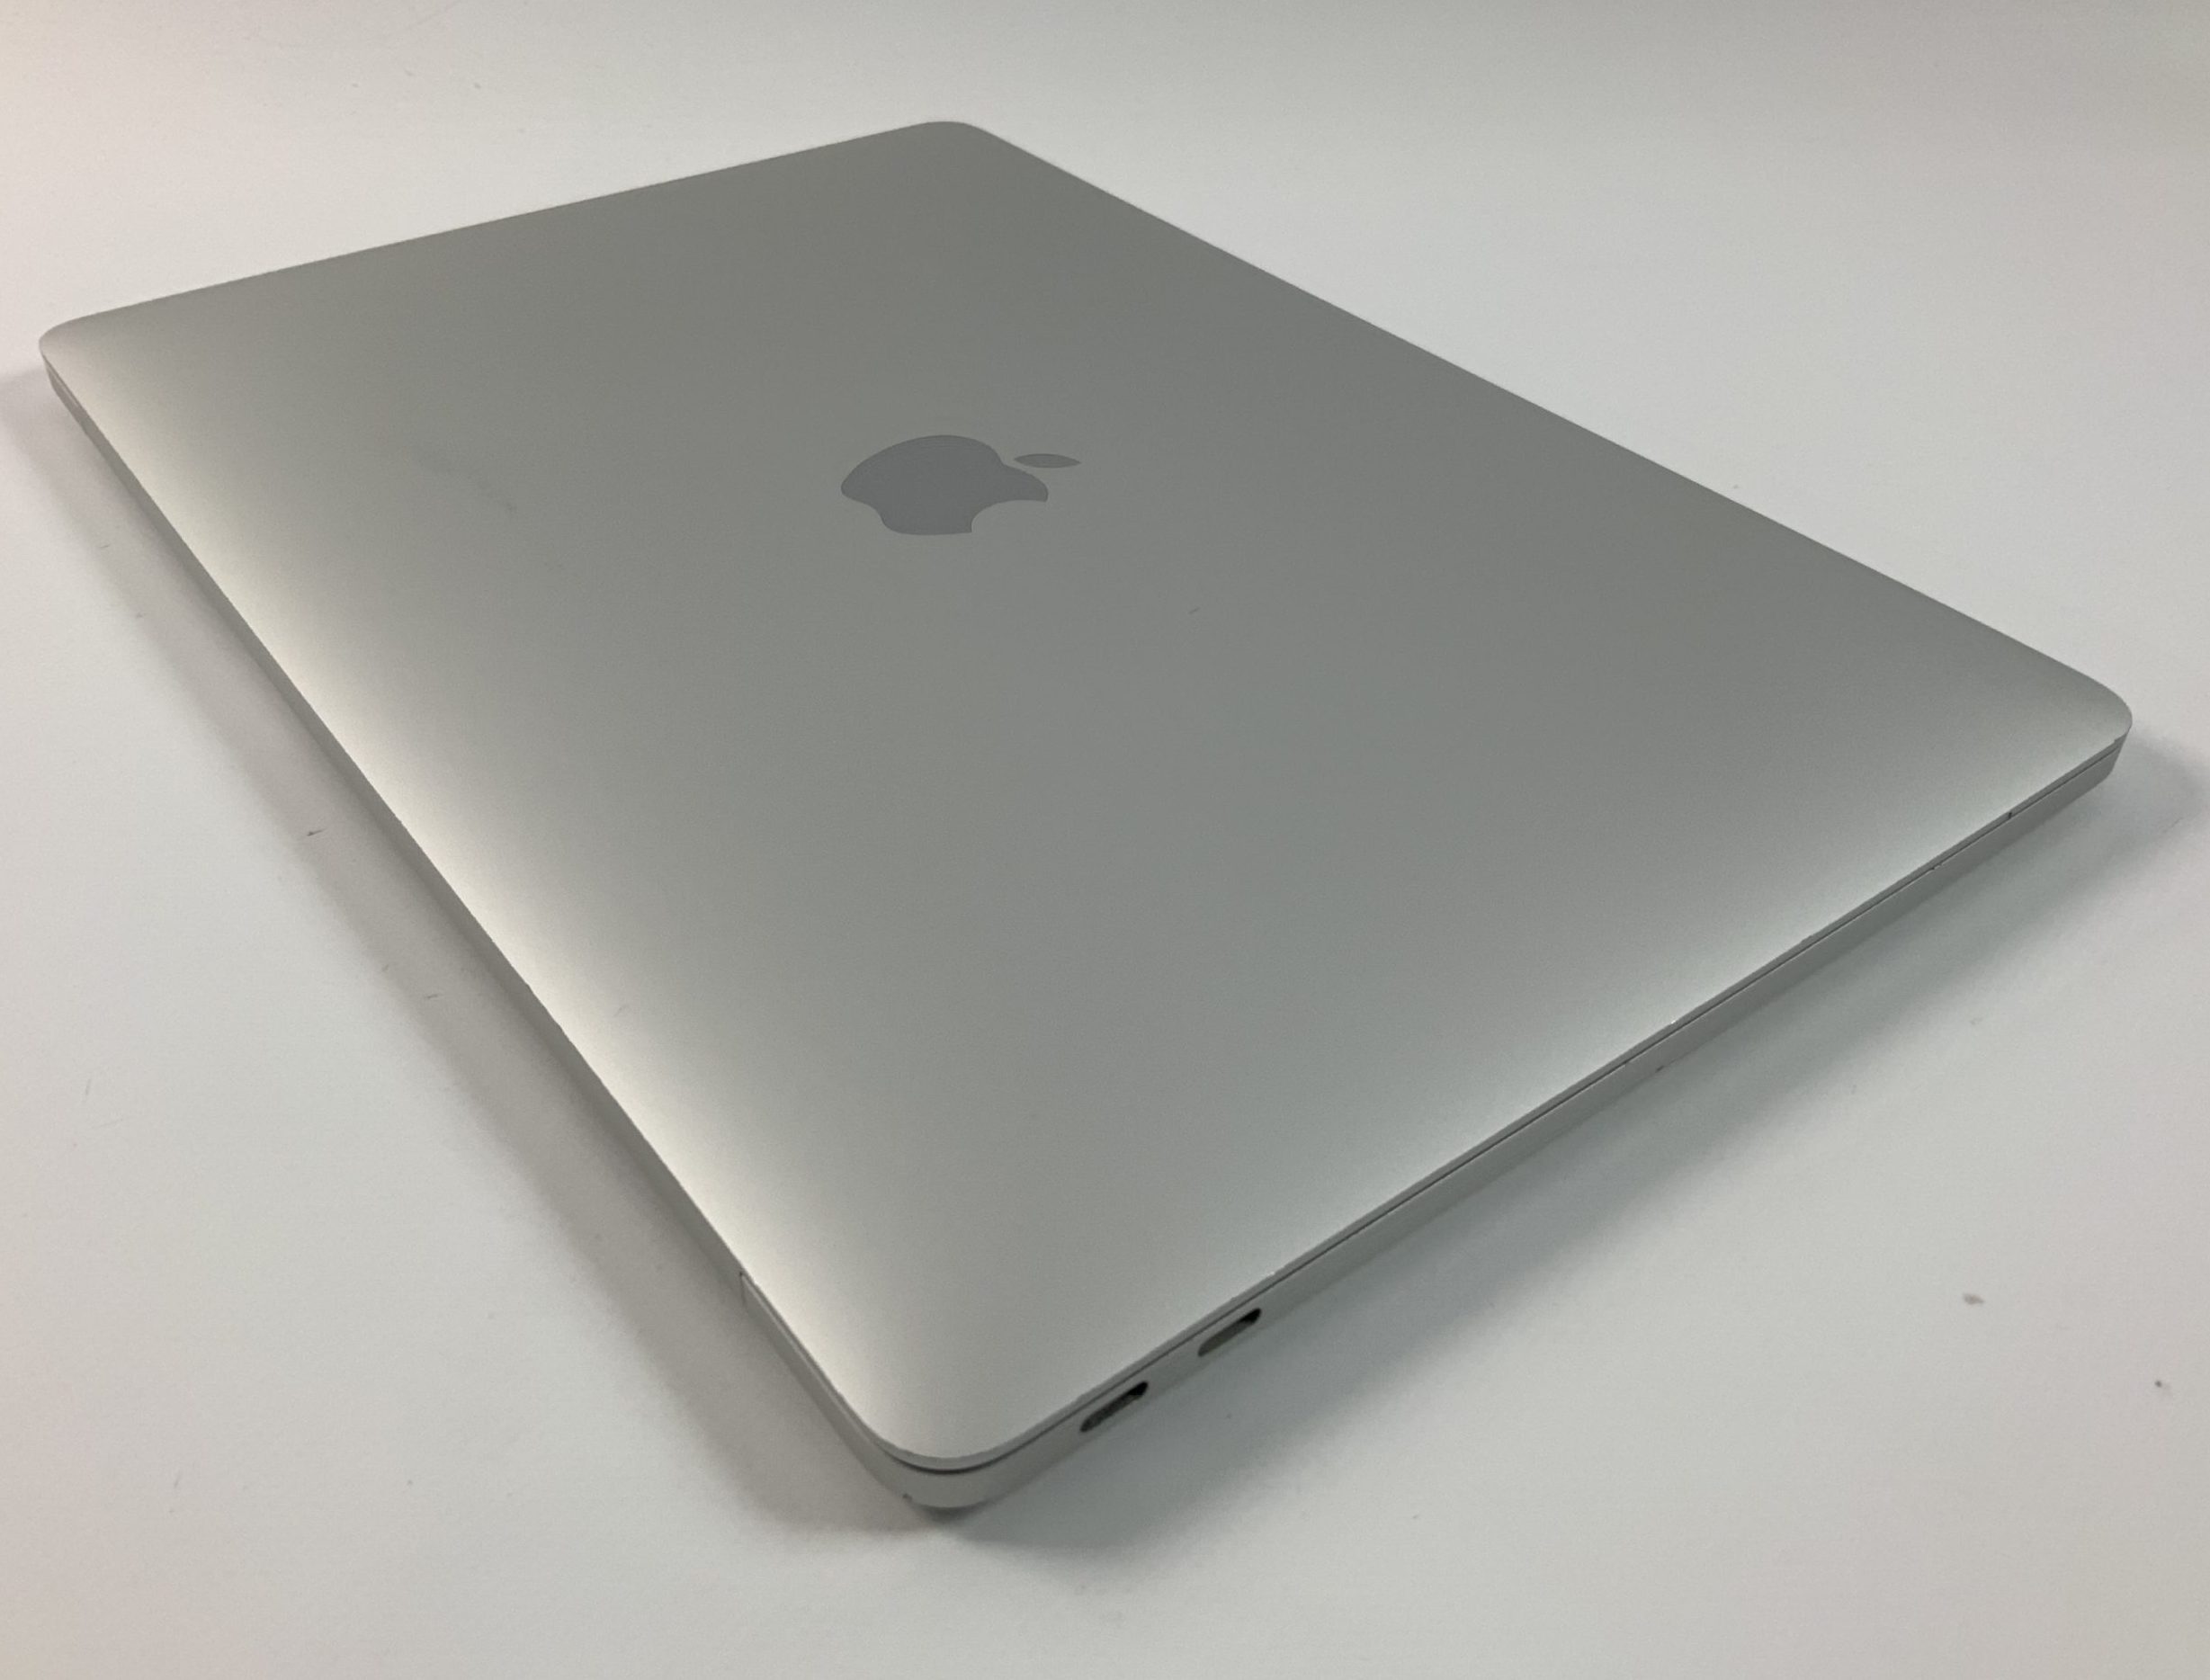 MacBook Pro 13" 2TBT Mid 2017 (Intel Core i5 2.3 GHz 8 GB RAM 256 GB SSD), Silver, Intel Core i5 2.3 GHz, 8 GB RAM, 256 GB SSD, imagen 3